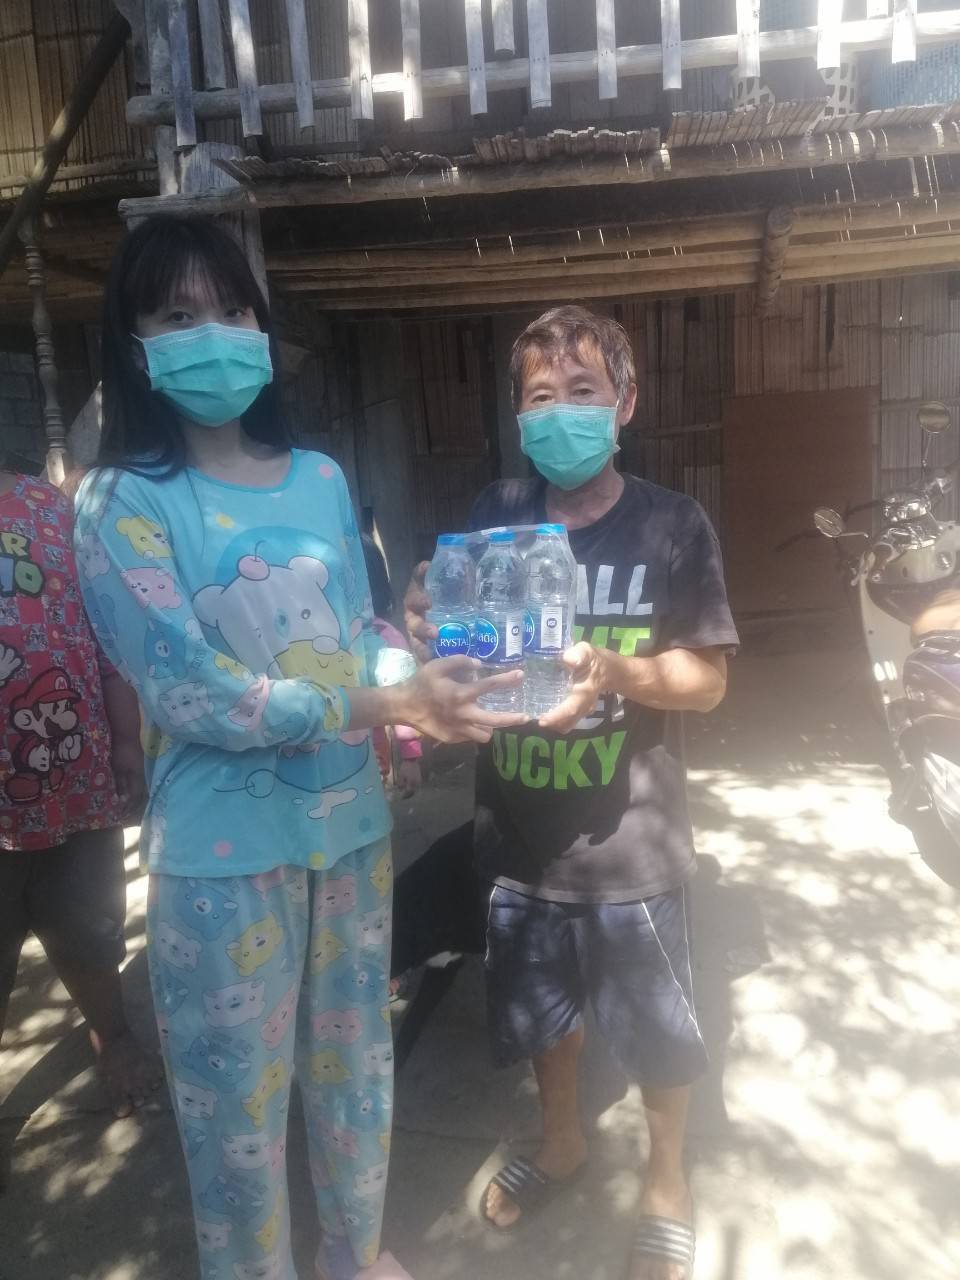 ขอบคุณมูลนิธิรักษ์ไทย ที่สนับสนุนน้ำดื่ม